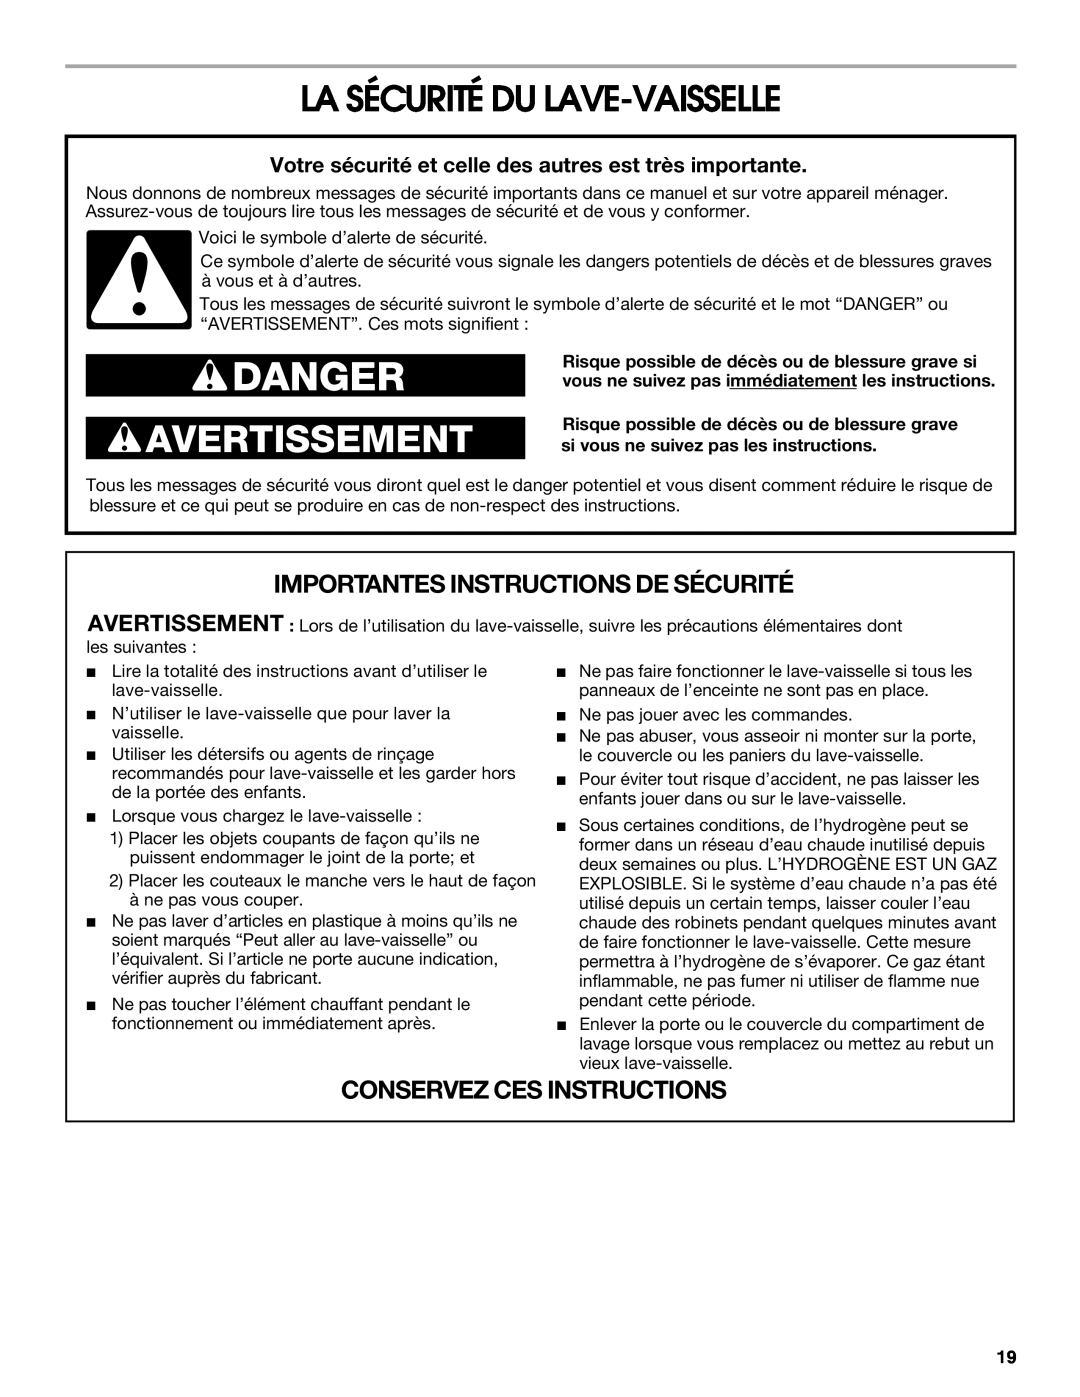 Estate TUD6900 manual La Sécurité Du Lave-Vaisselle, Votre sécurité et celle des autres est très importante, Danger 